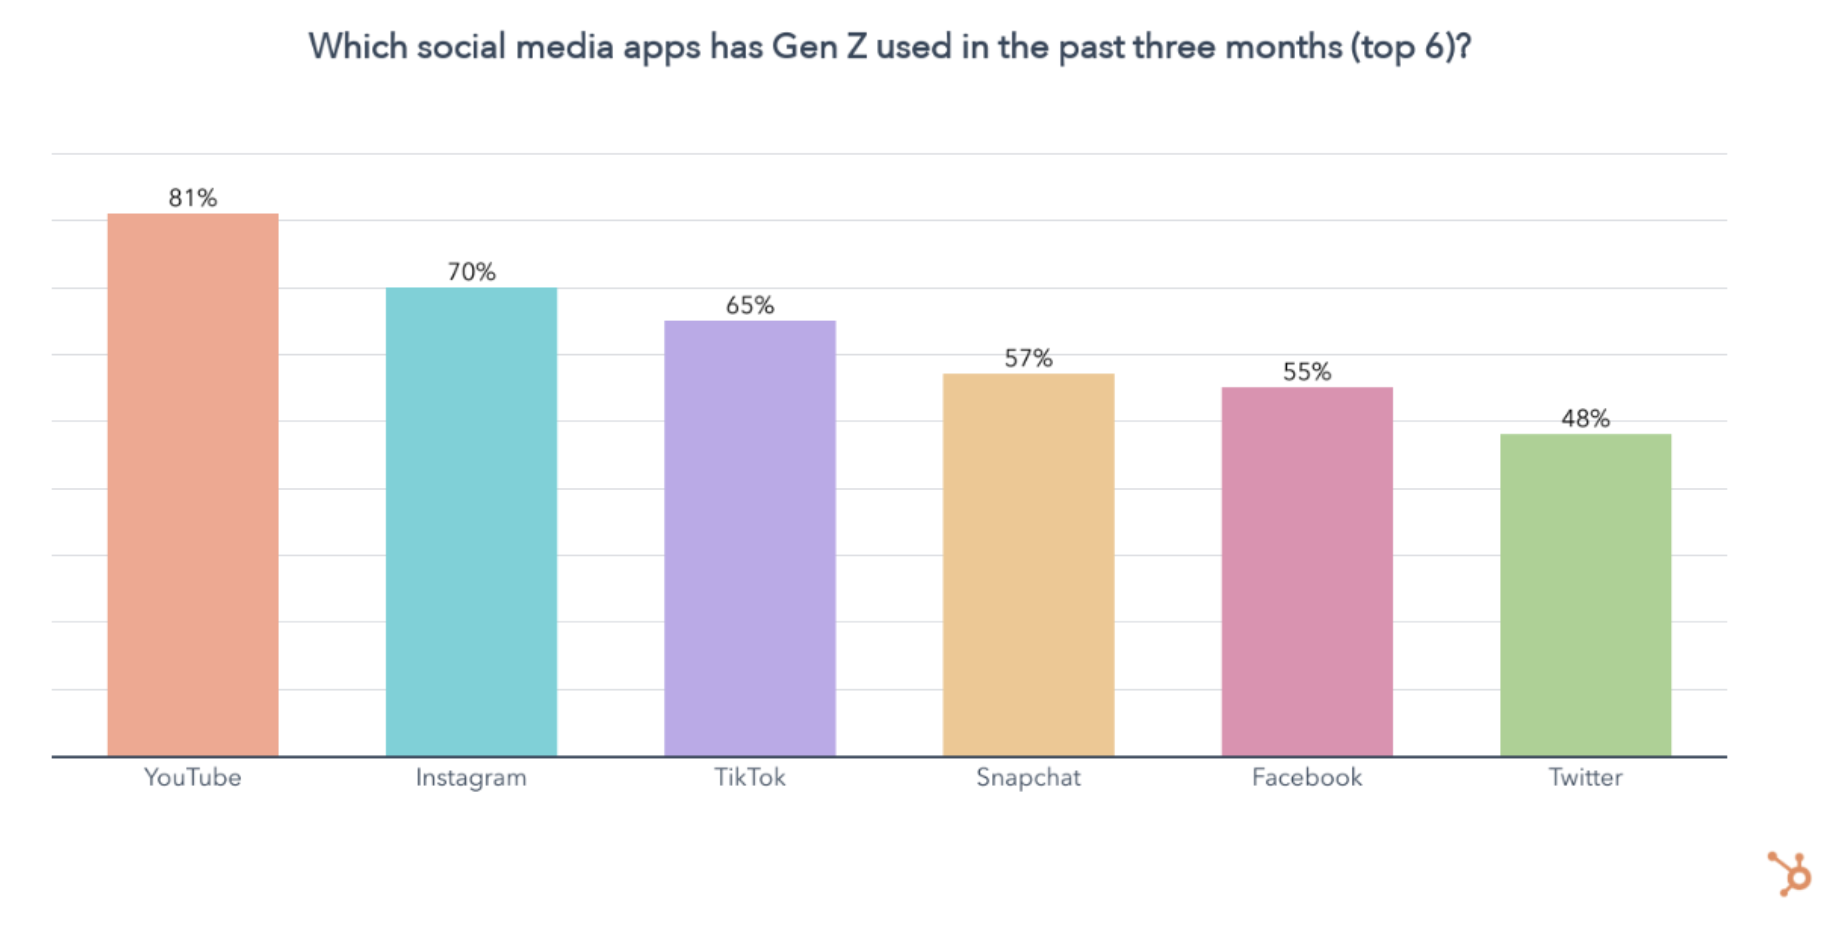 نموداری که یوتیوب را به‌عنوان برنامه رسانه‌های اجتماعی که بیشتر توسط ژنرال Z مورد استفاده قرار می‌گیرد نشان می‌دهد.